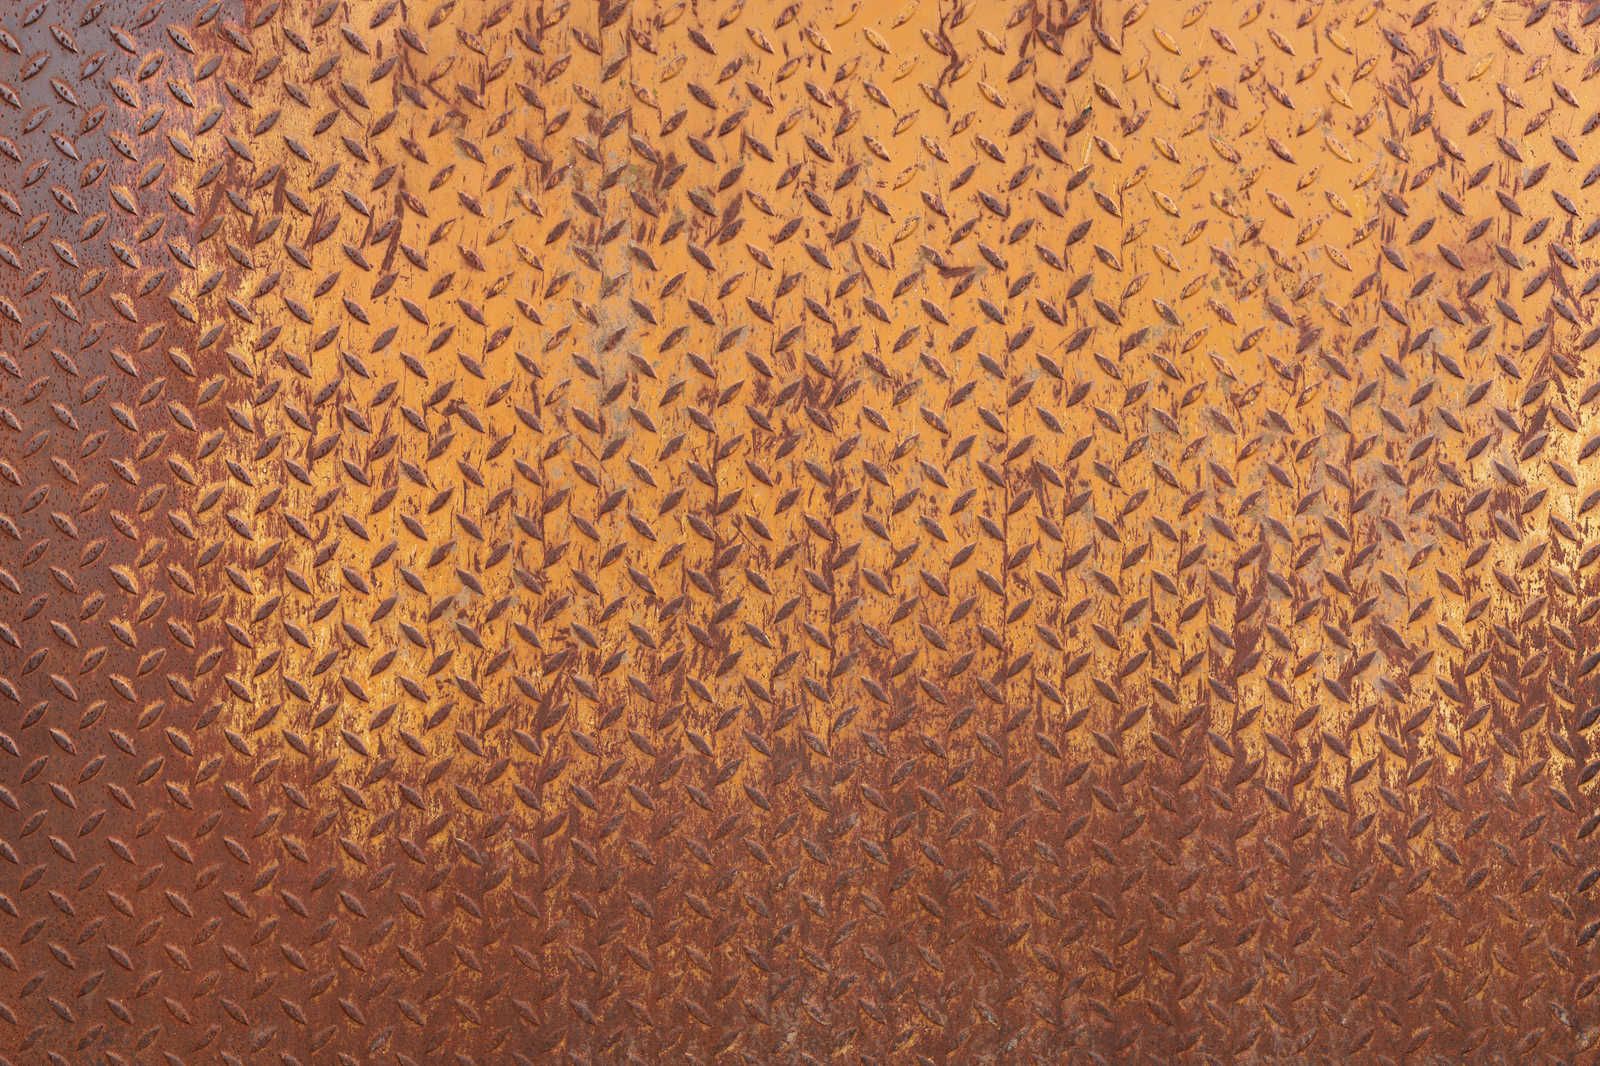             Tela metallica che dipinge la ruggine su lamiera d'acciaio con motivo a diamante - 0,90 m x 0,60 m
        